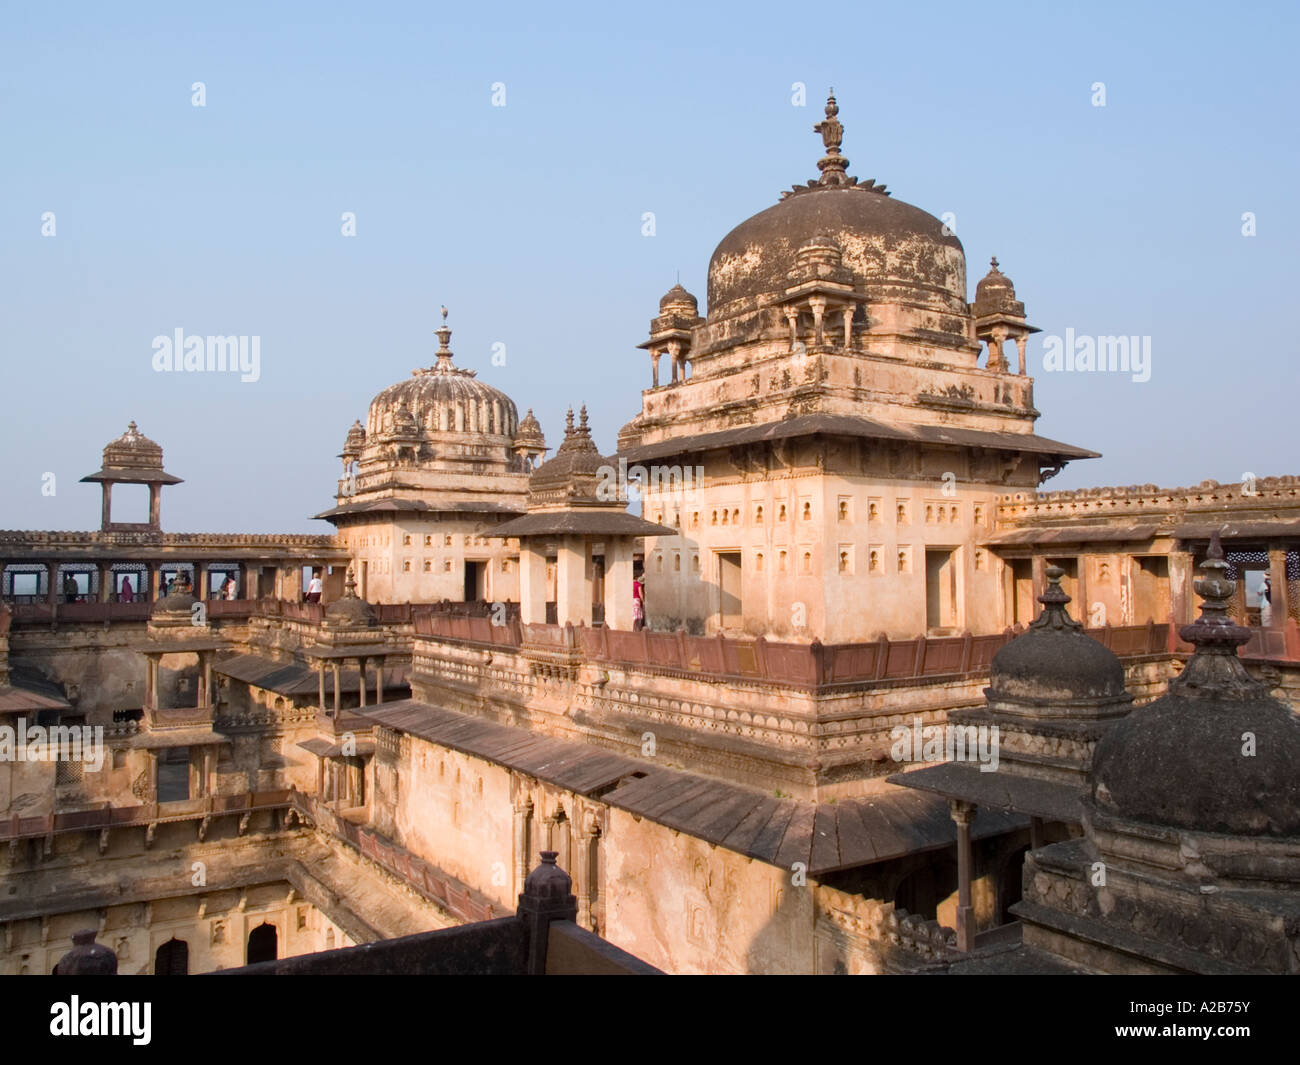 Domes on 17th century Jahangir Mahal Palace Orchha Madhya Pradesh India Stock Photo